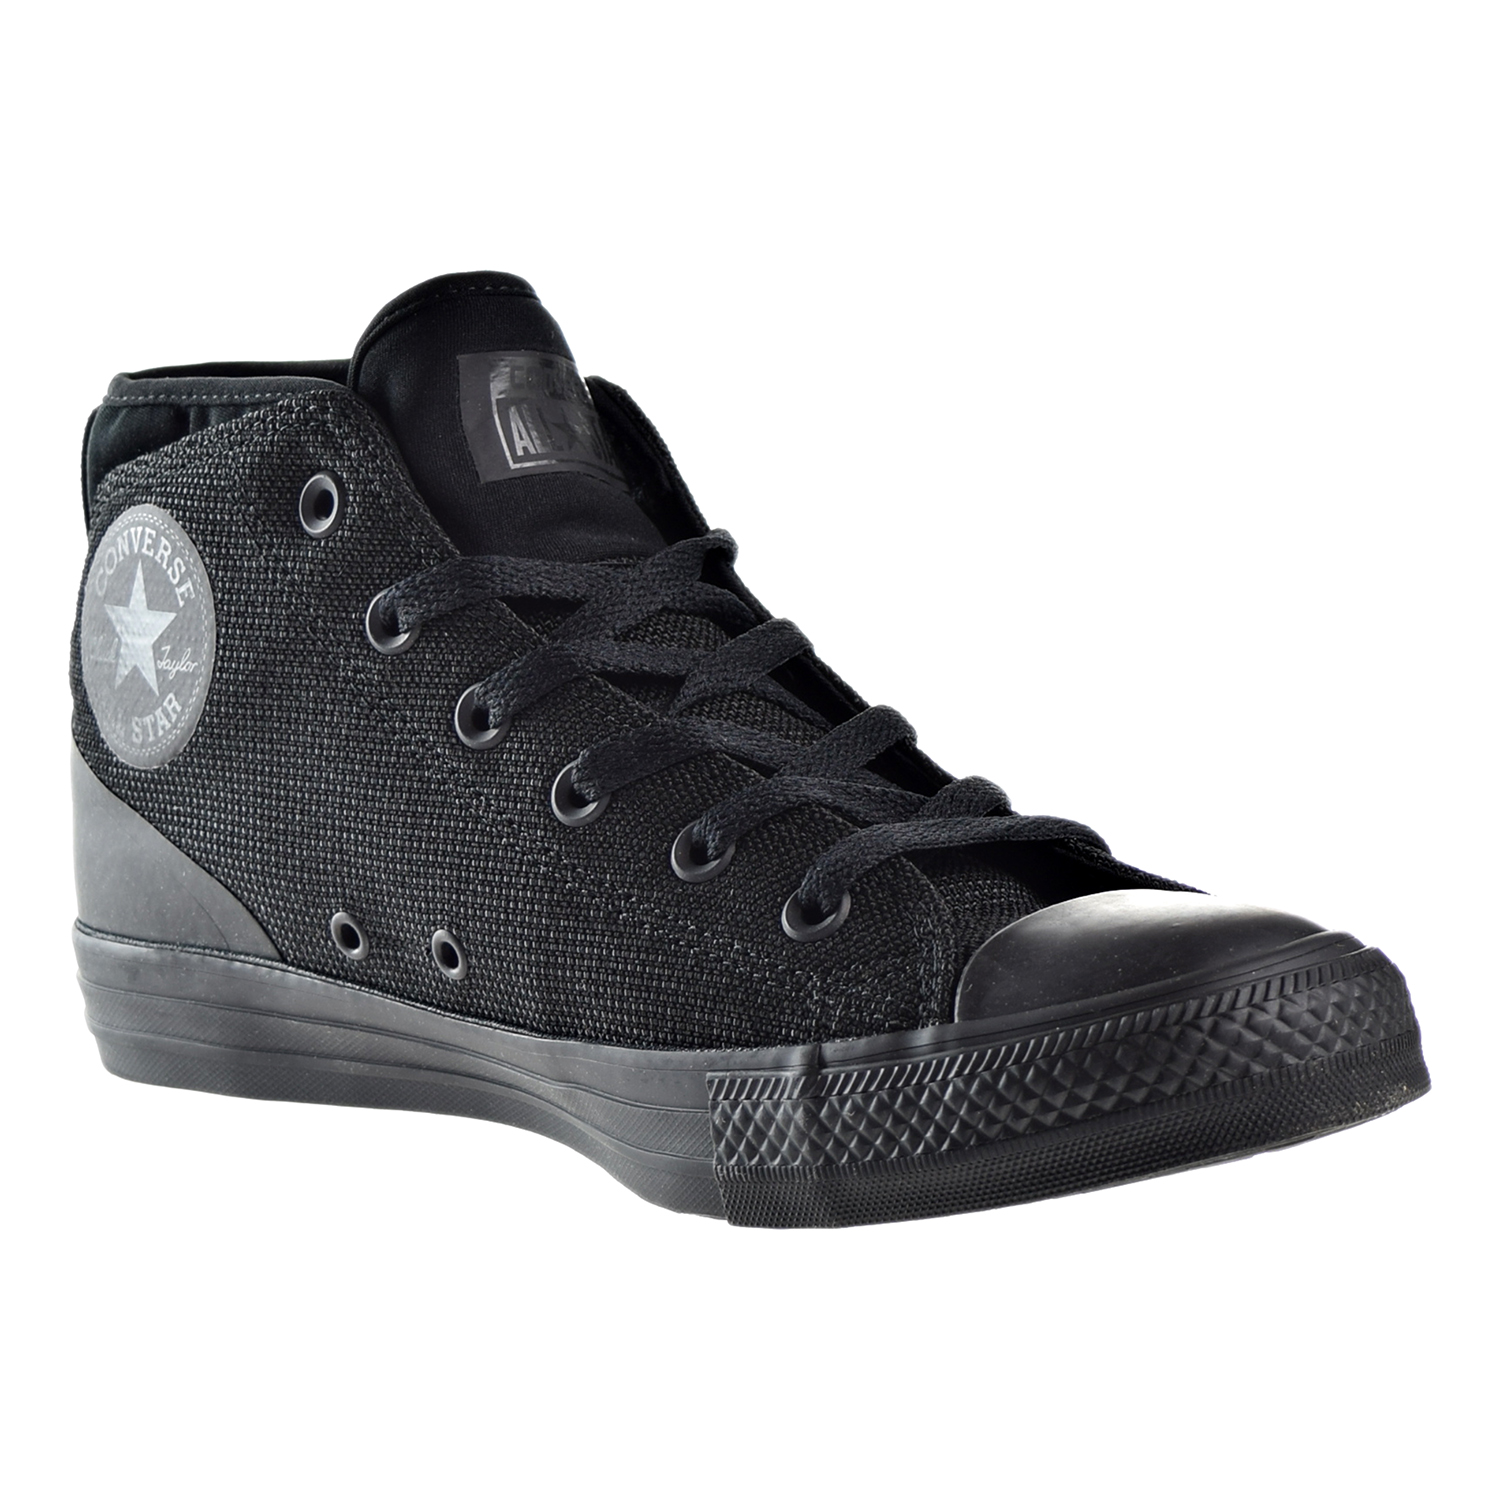 Converse Chuck Taylor All-Star Syde Street Mid Men's Shoe 155489c (11.5 D(M) US) - Walmart.com